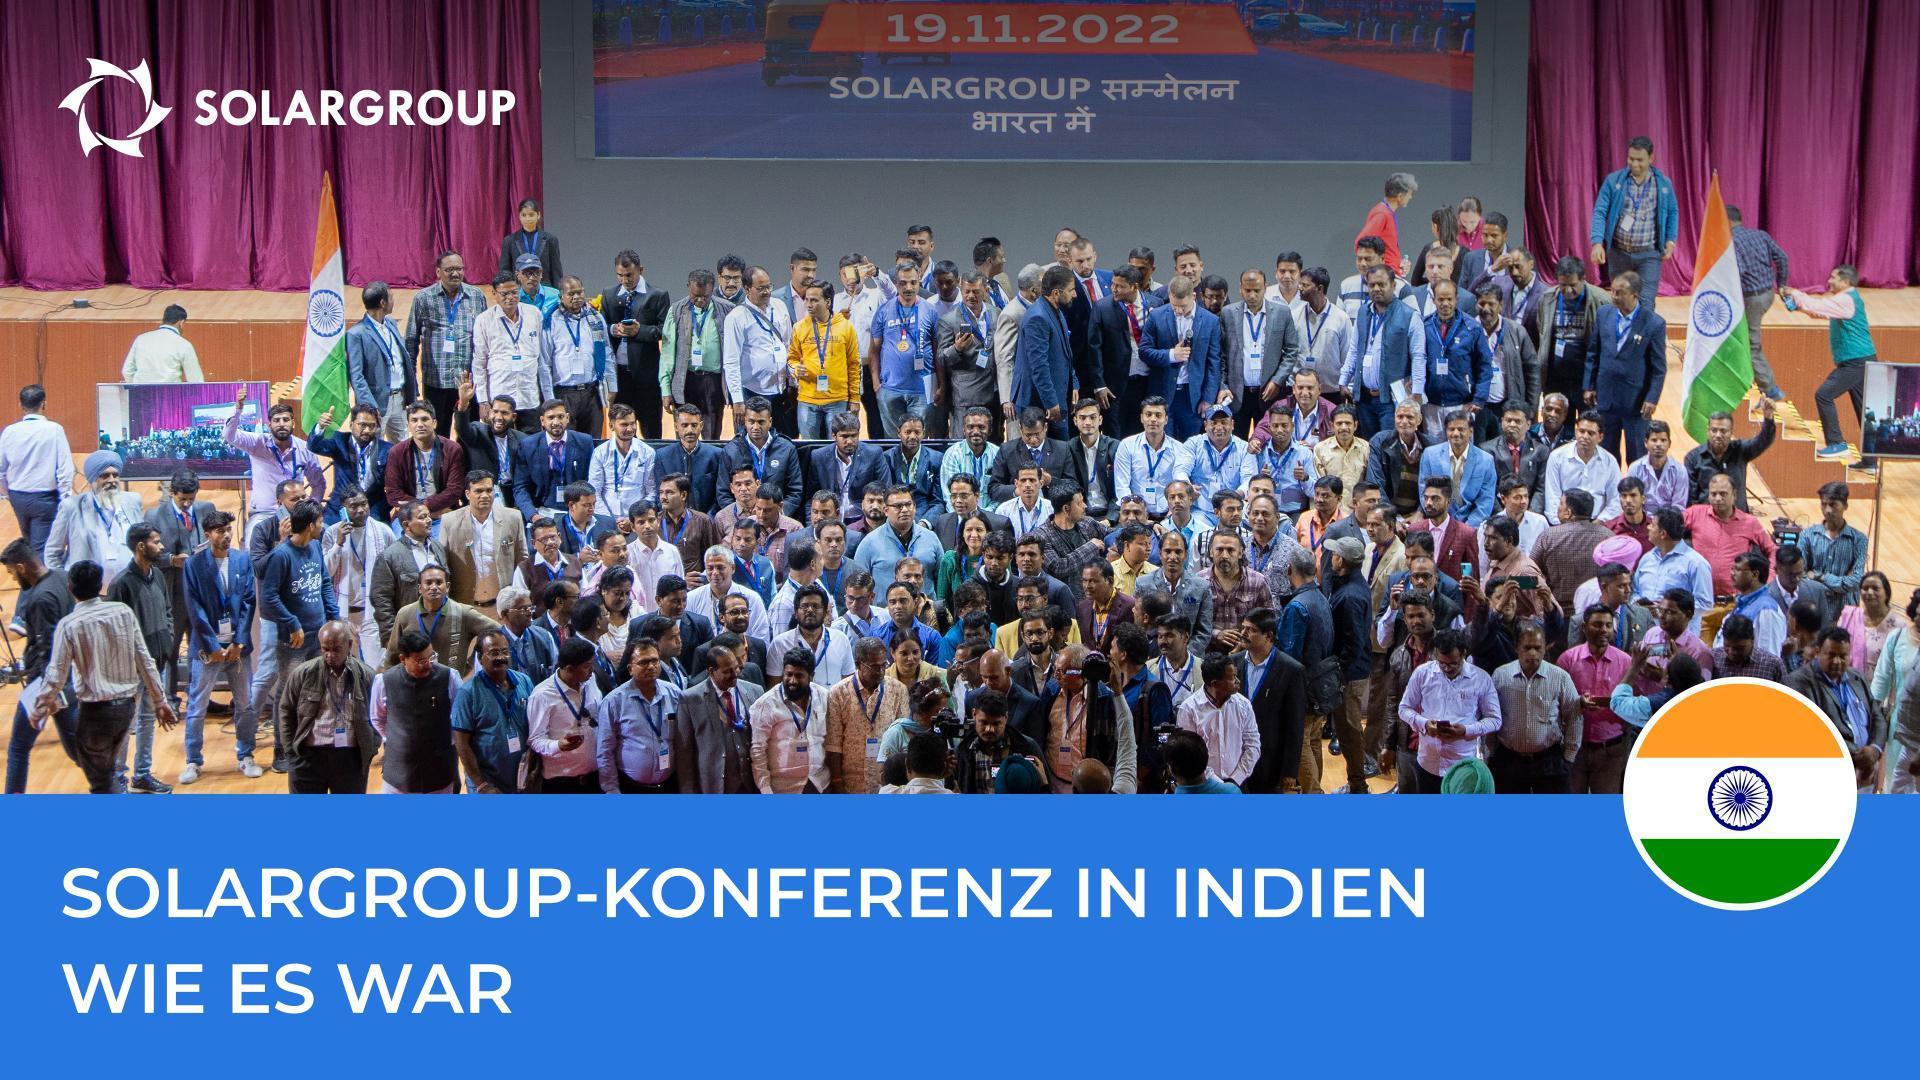 SOLARGROUP-Konferenz in Indien: die Highlights der Veranstaltung